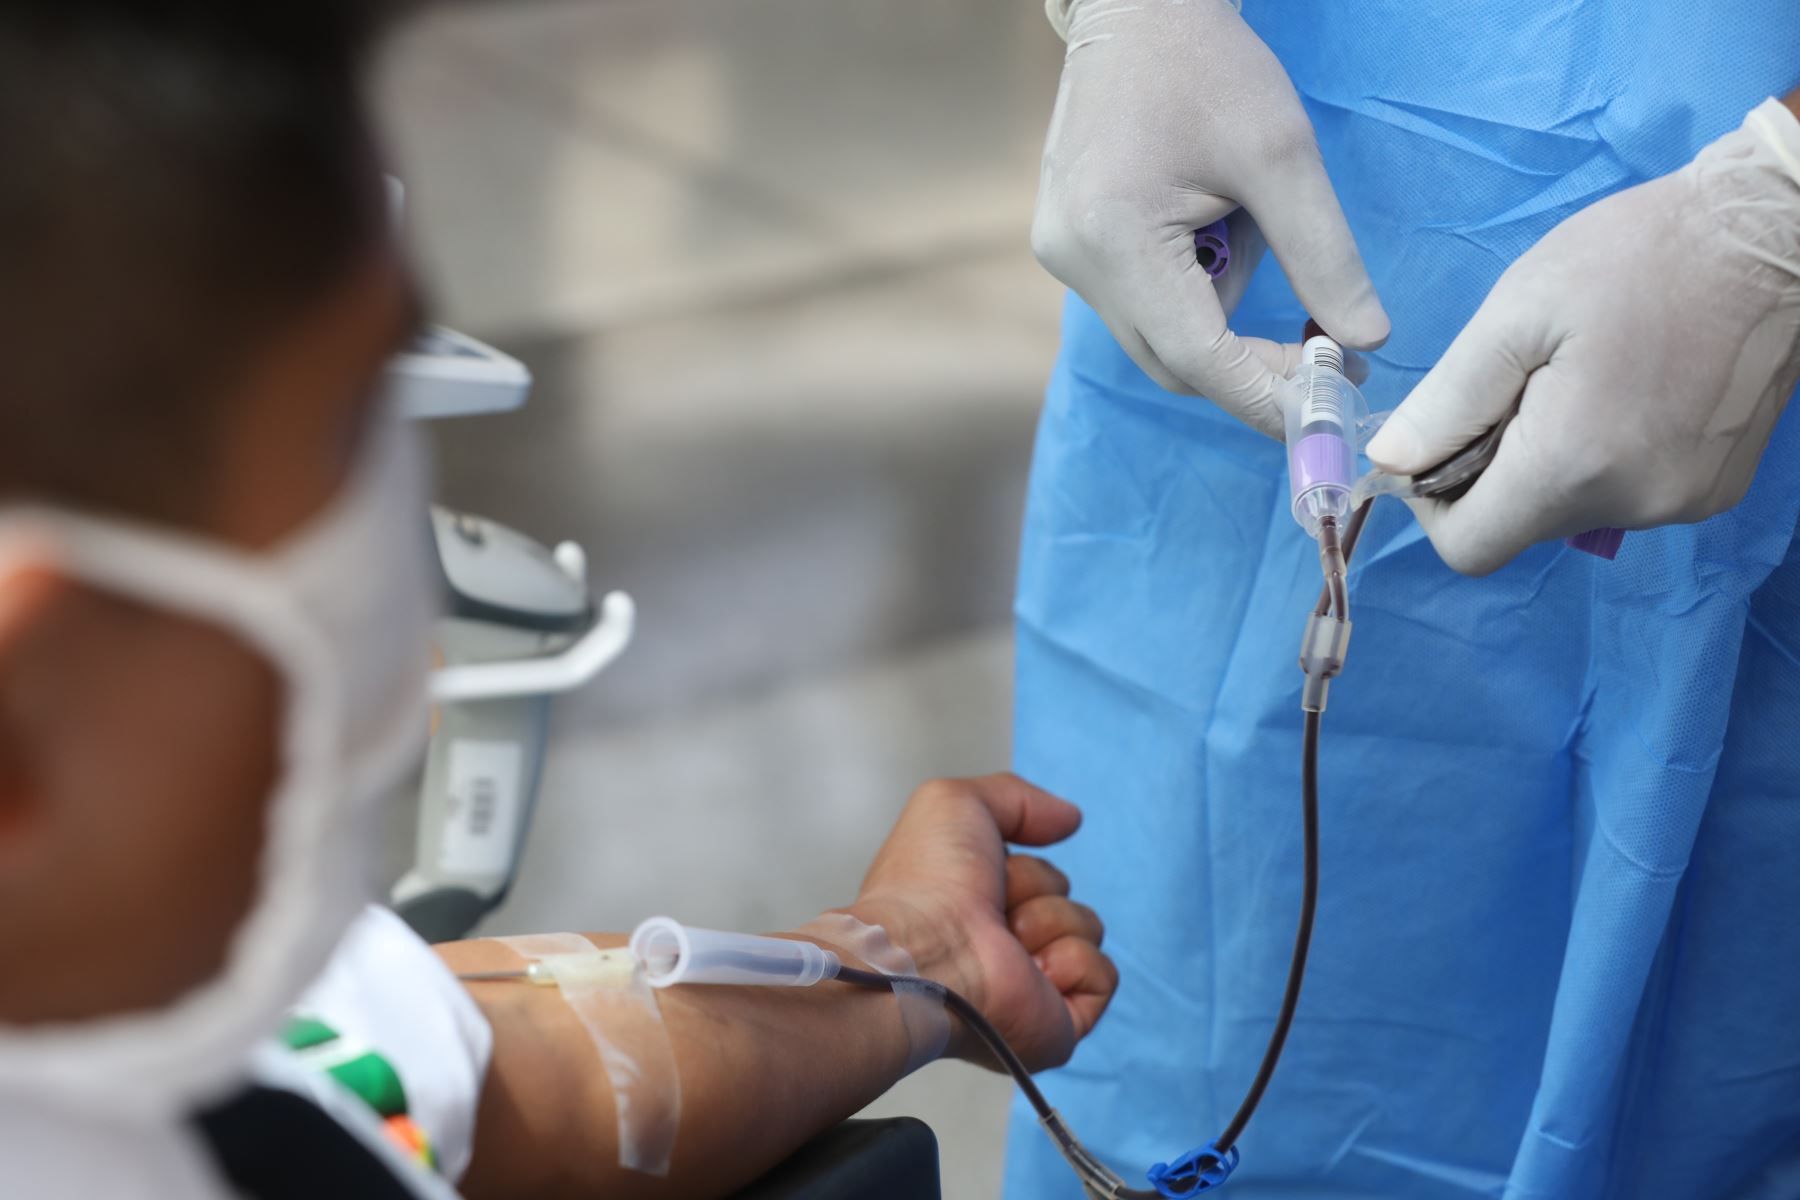 Equipo médico se trasladó a Base Aérea Las Palmas para recolectar más de 70 unidades en beneficio de pacientes en situación crítica que requieren transfusiones sanguíneas.